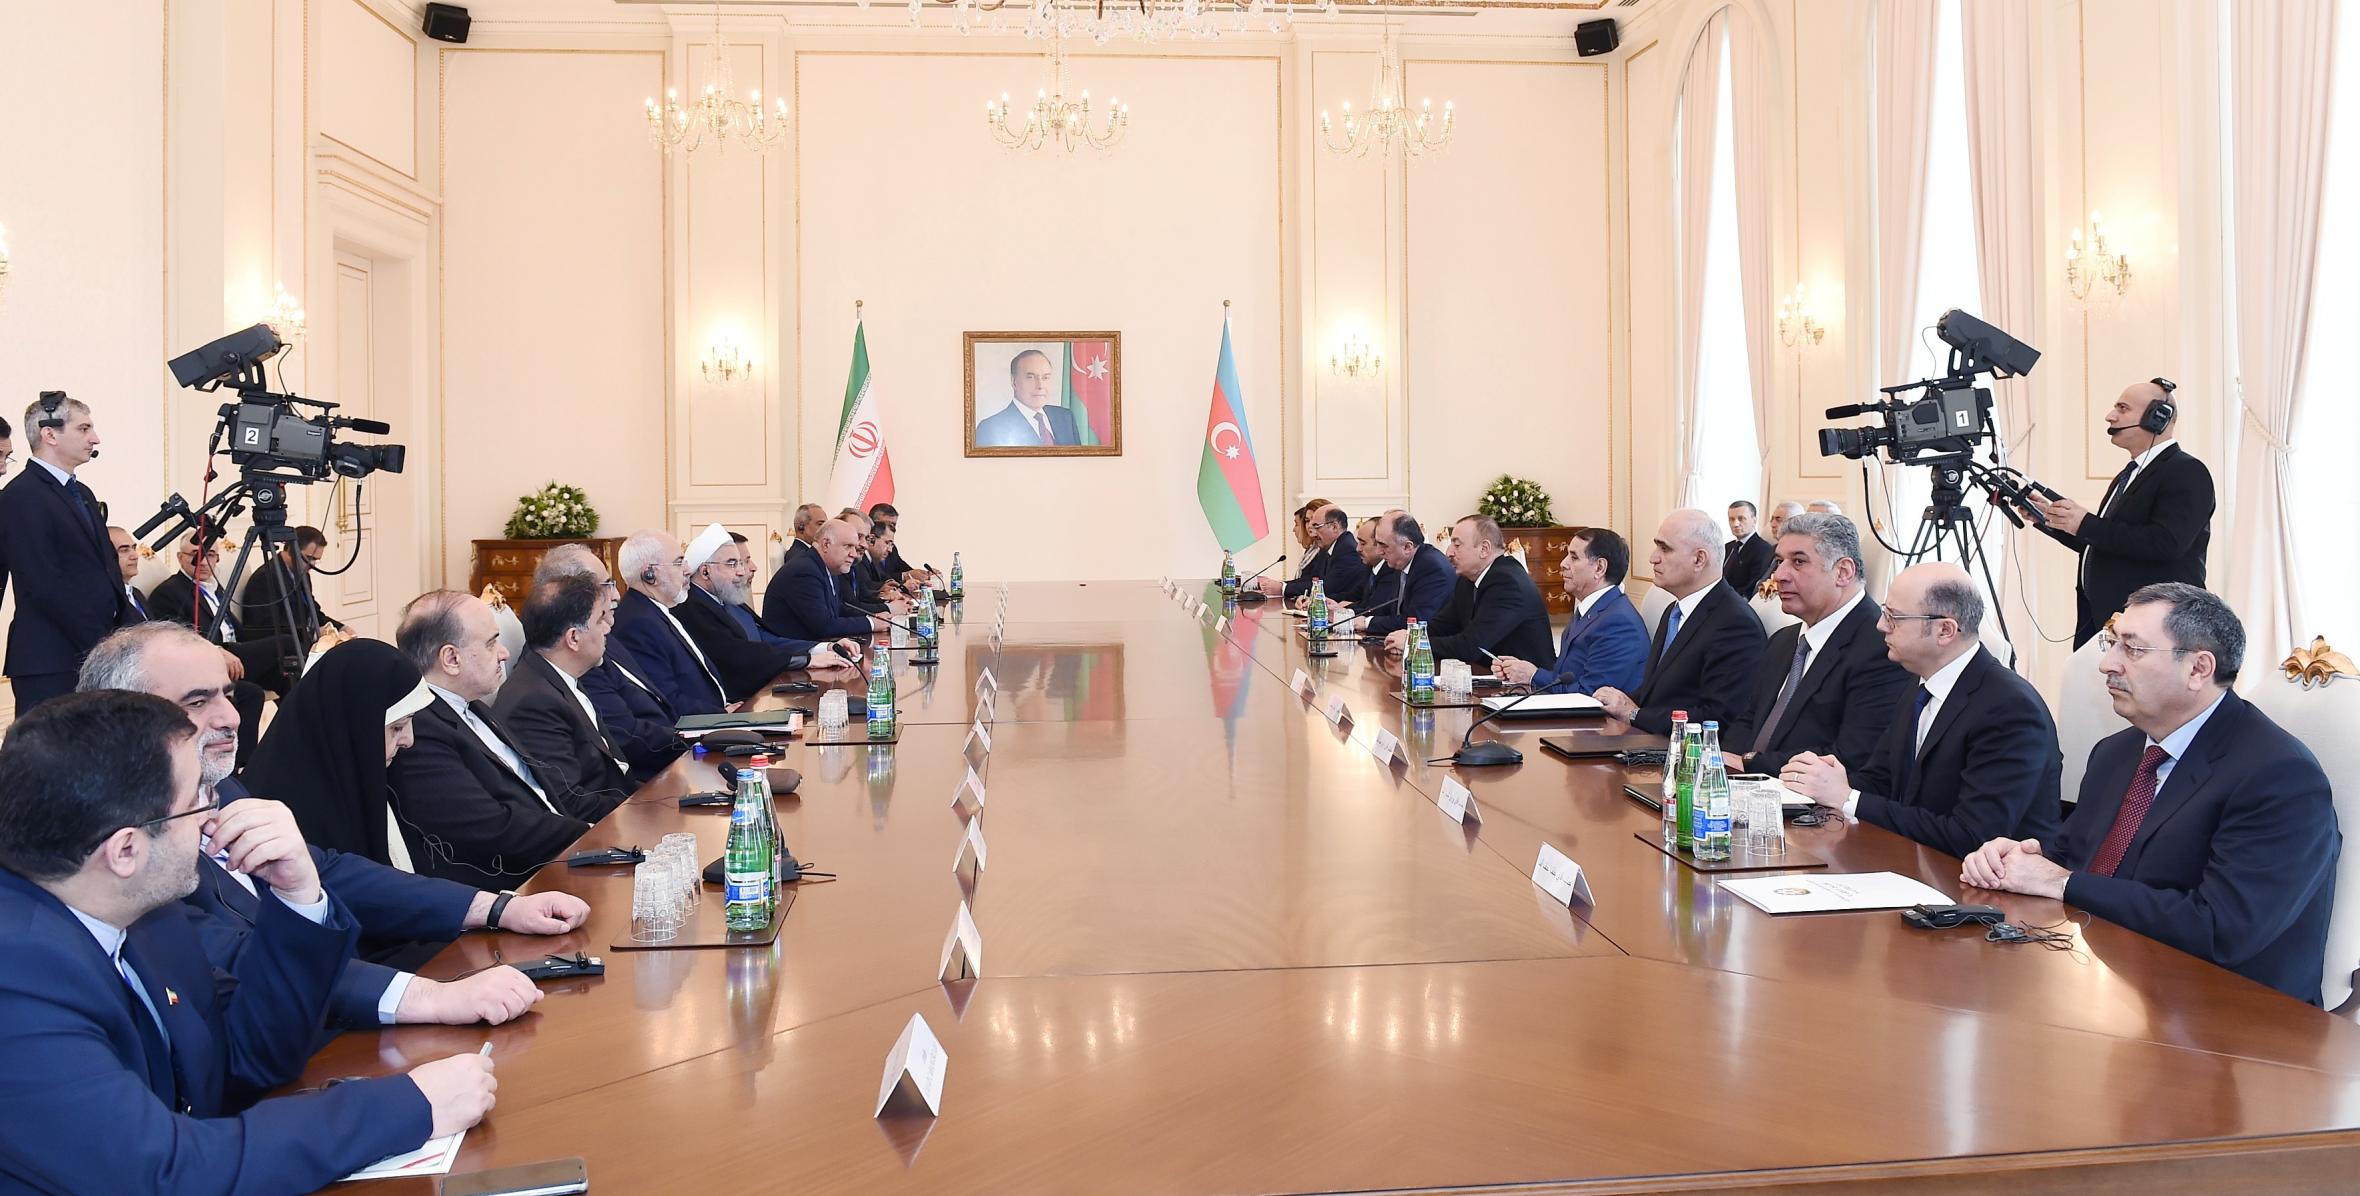 Состоялась встреча Ильхама Алиева и Президента Исламской Республики Иран Хасана Роухани в расширенном составе с участием делегаций